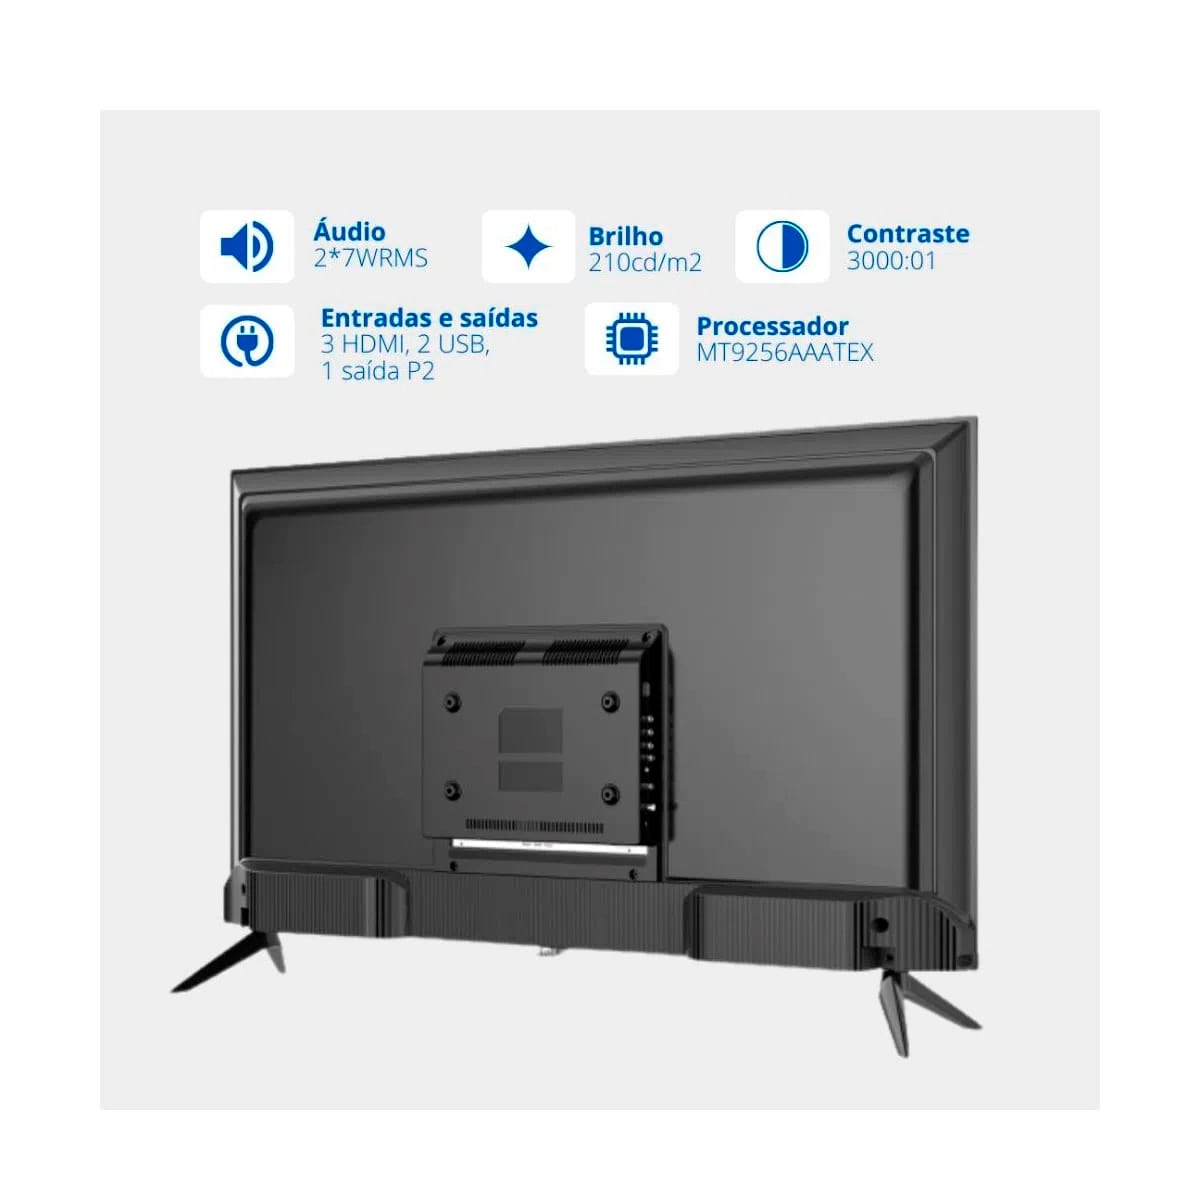 Smart Tv 32 HQ LED HD Conversor Digital 3 HDMI 2 USB Wi-Fi - HQSTV32NK-66523